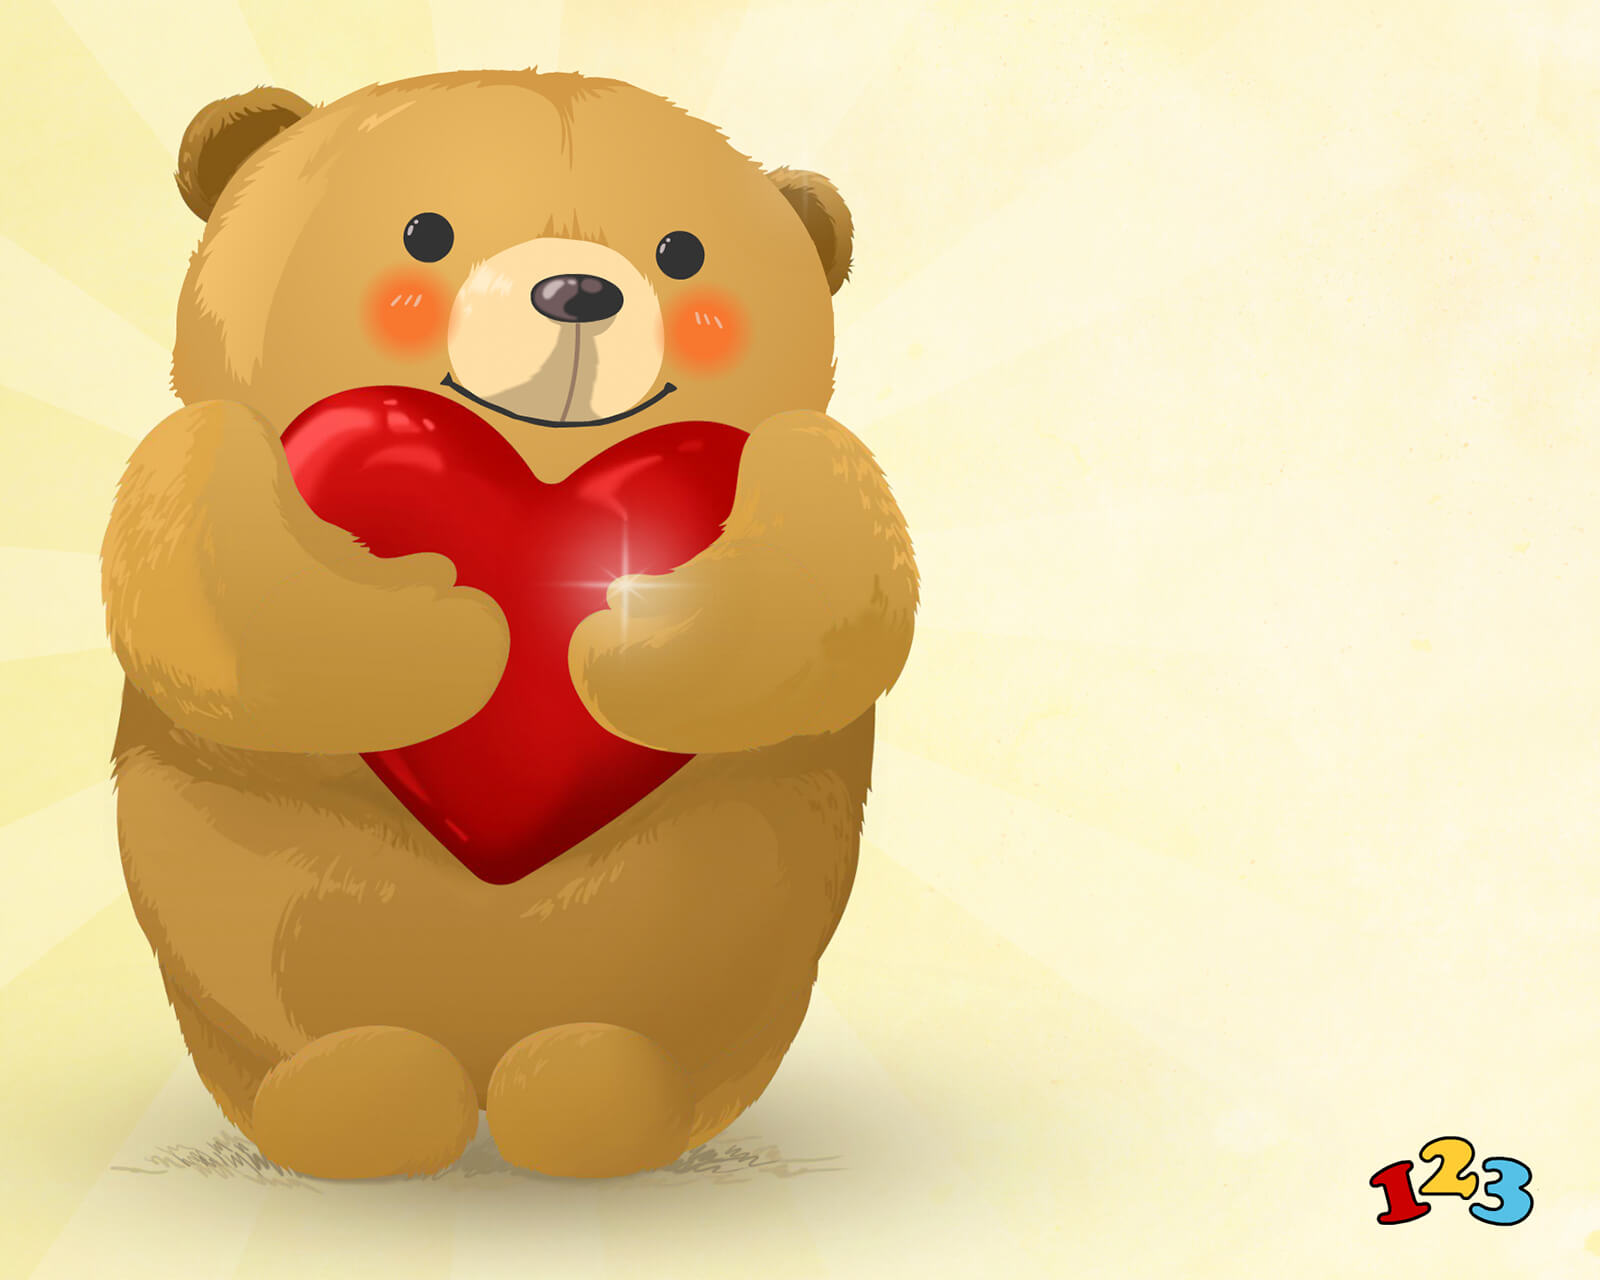 Teddy bear hug - Thinking of You - send 